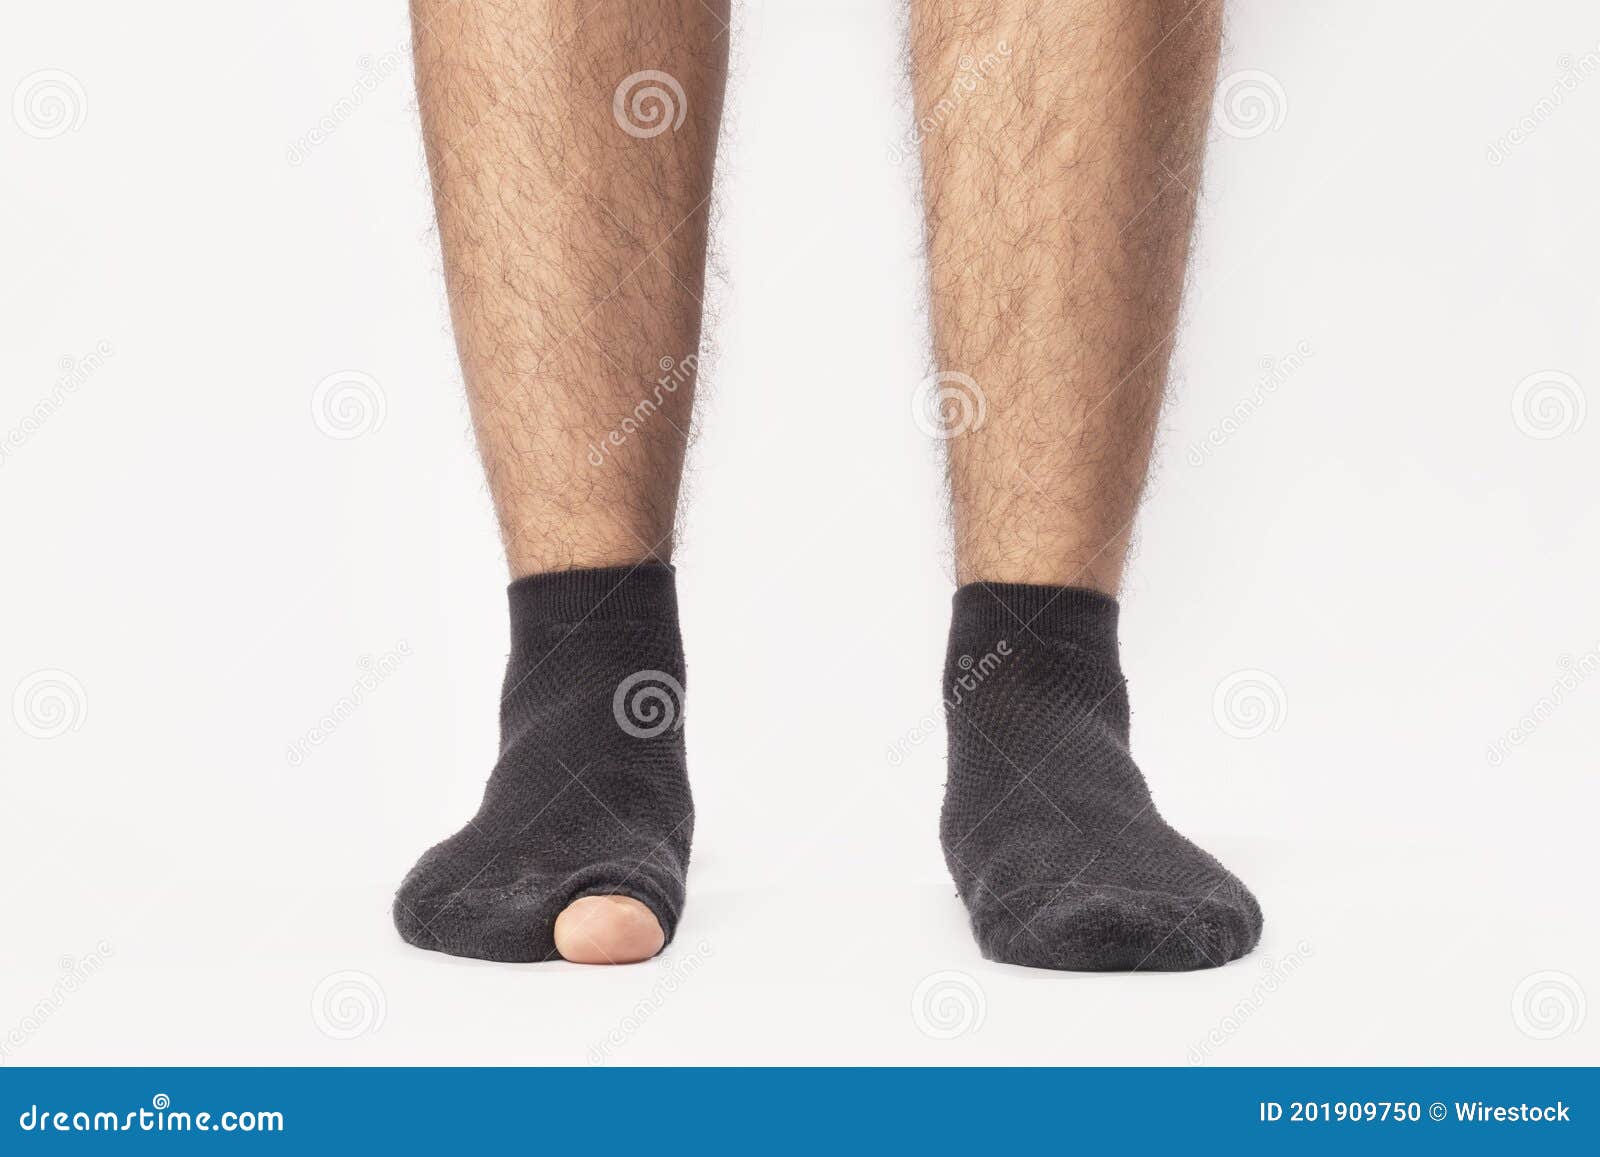 Hombre con calcetines negros